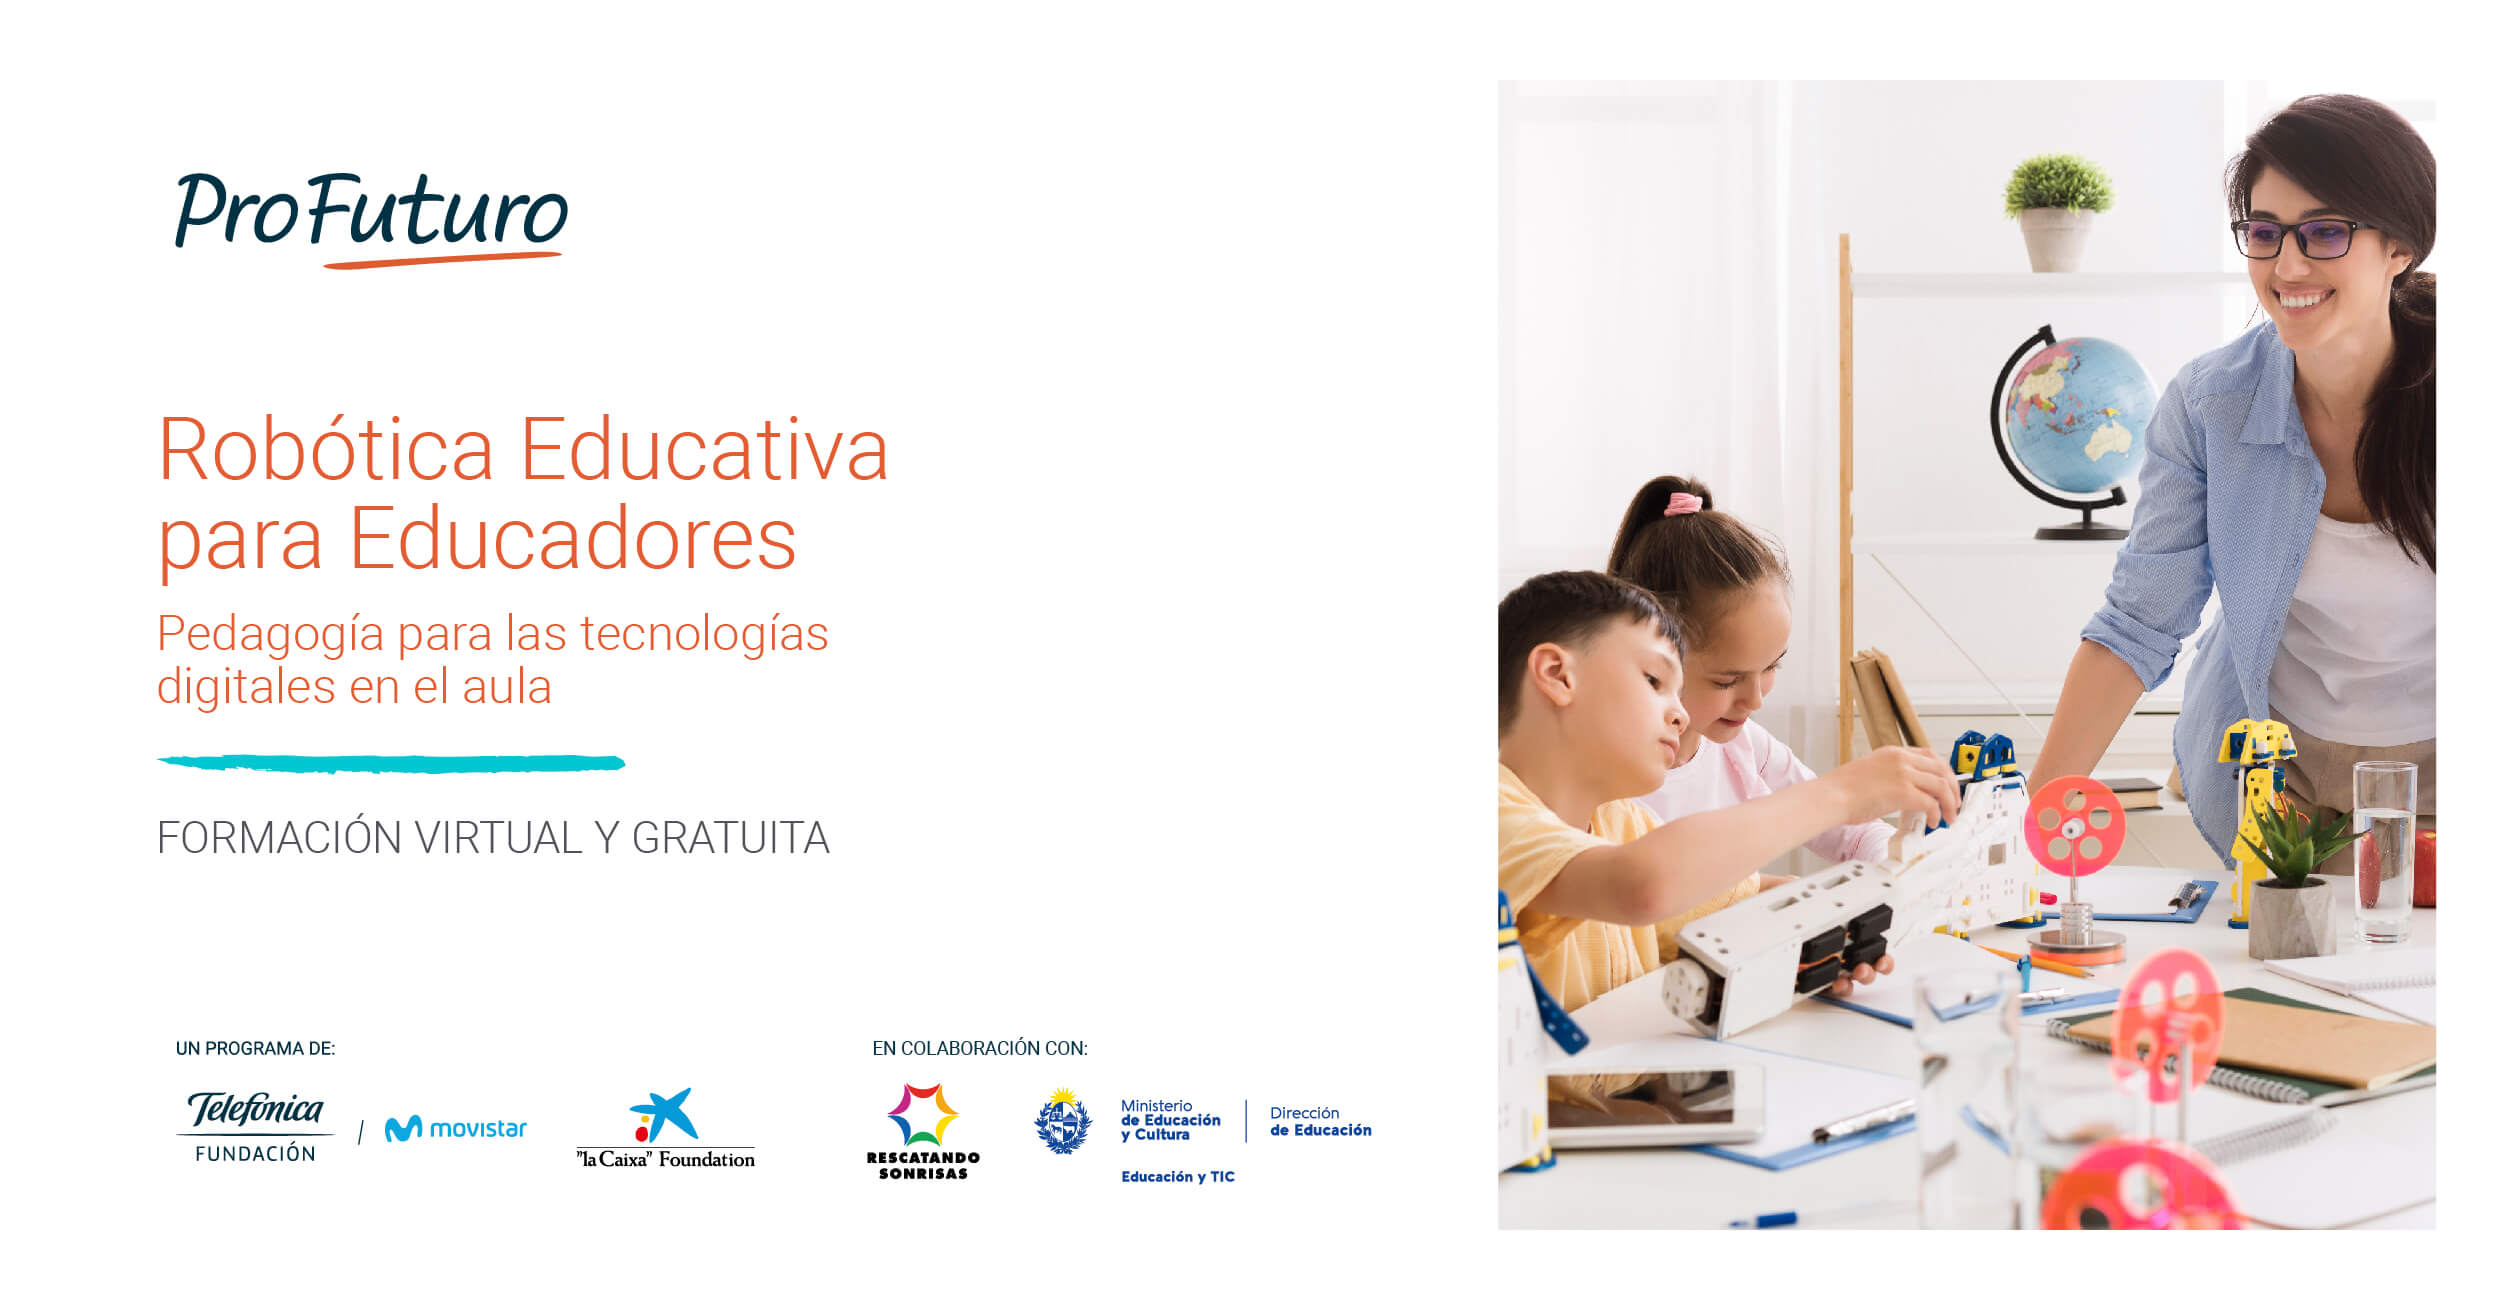 19 de mayo - Curso virtual para docentes: “Robótica Educativa para Educadores. Pedagogía para las tecnologías digitales en el aula”